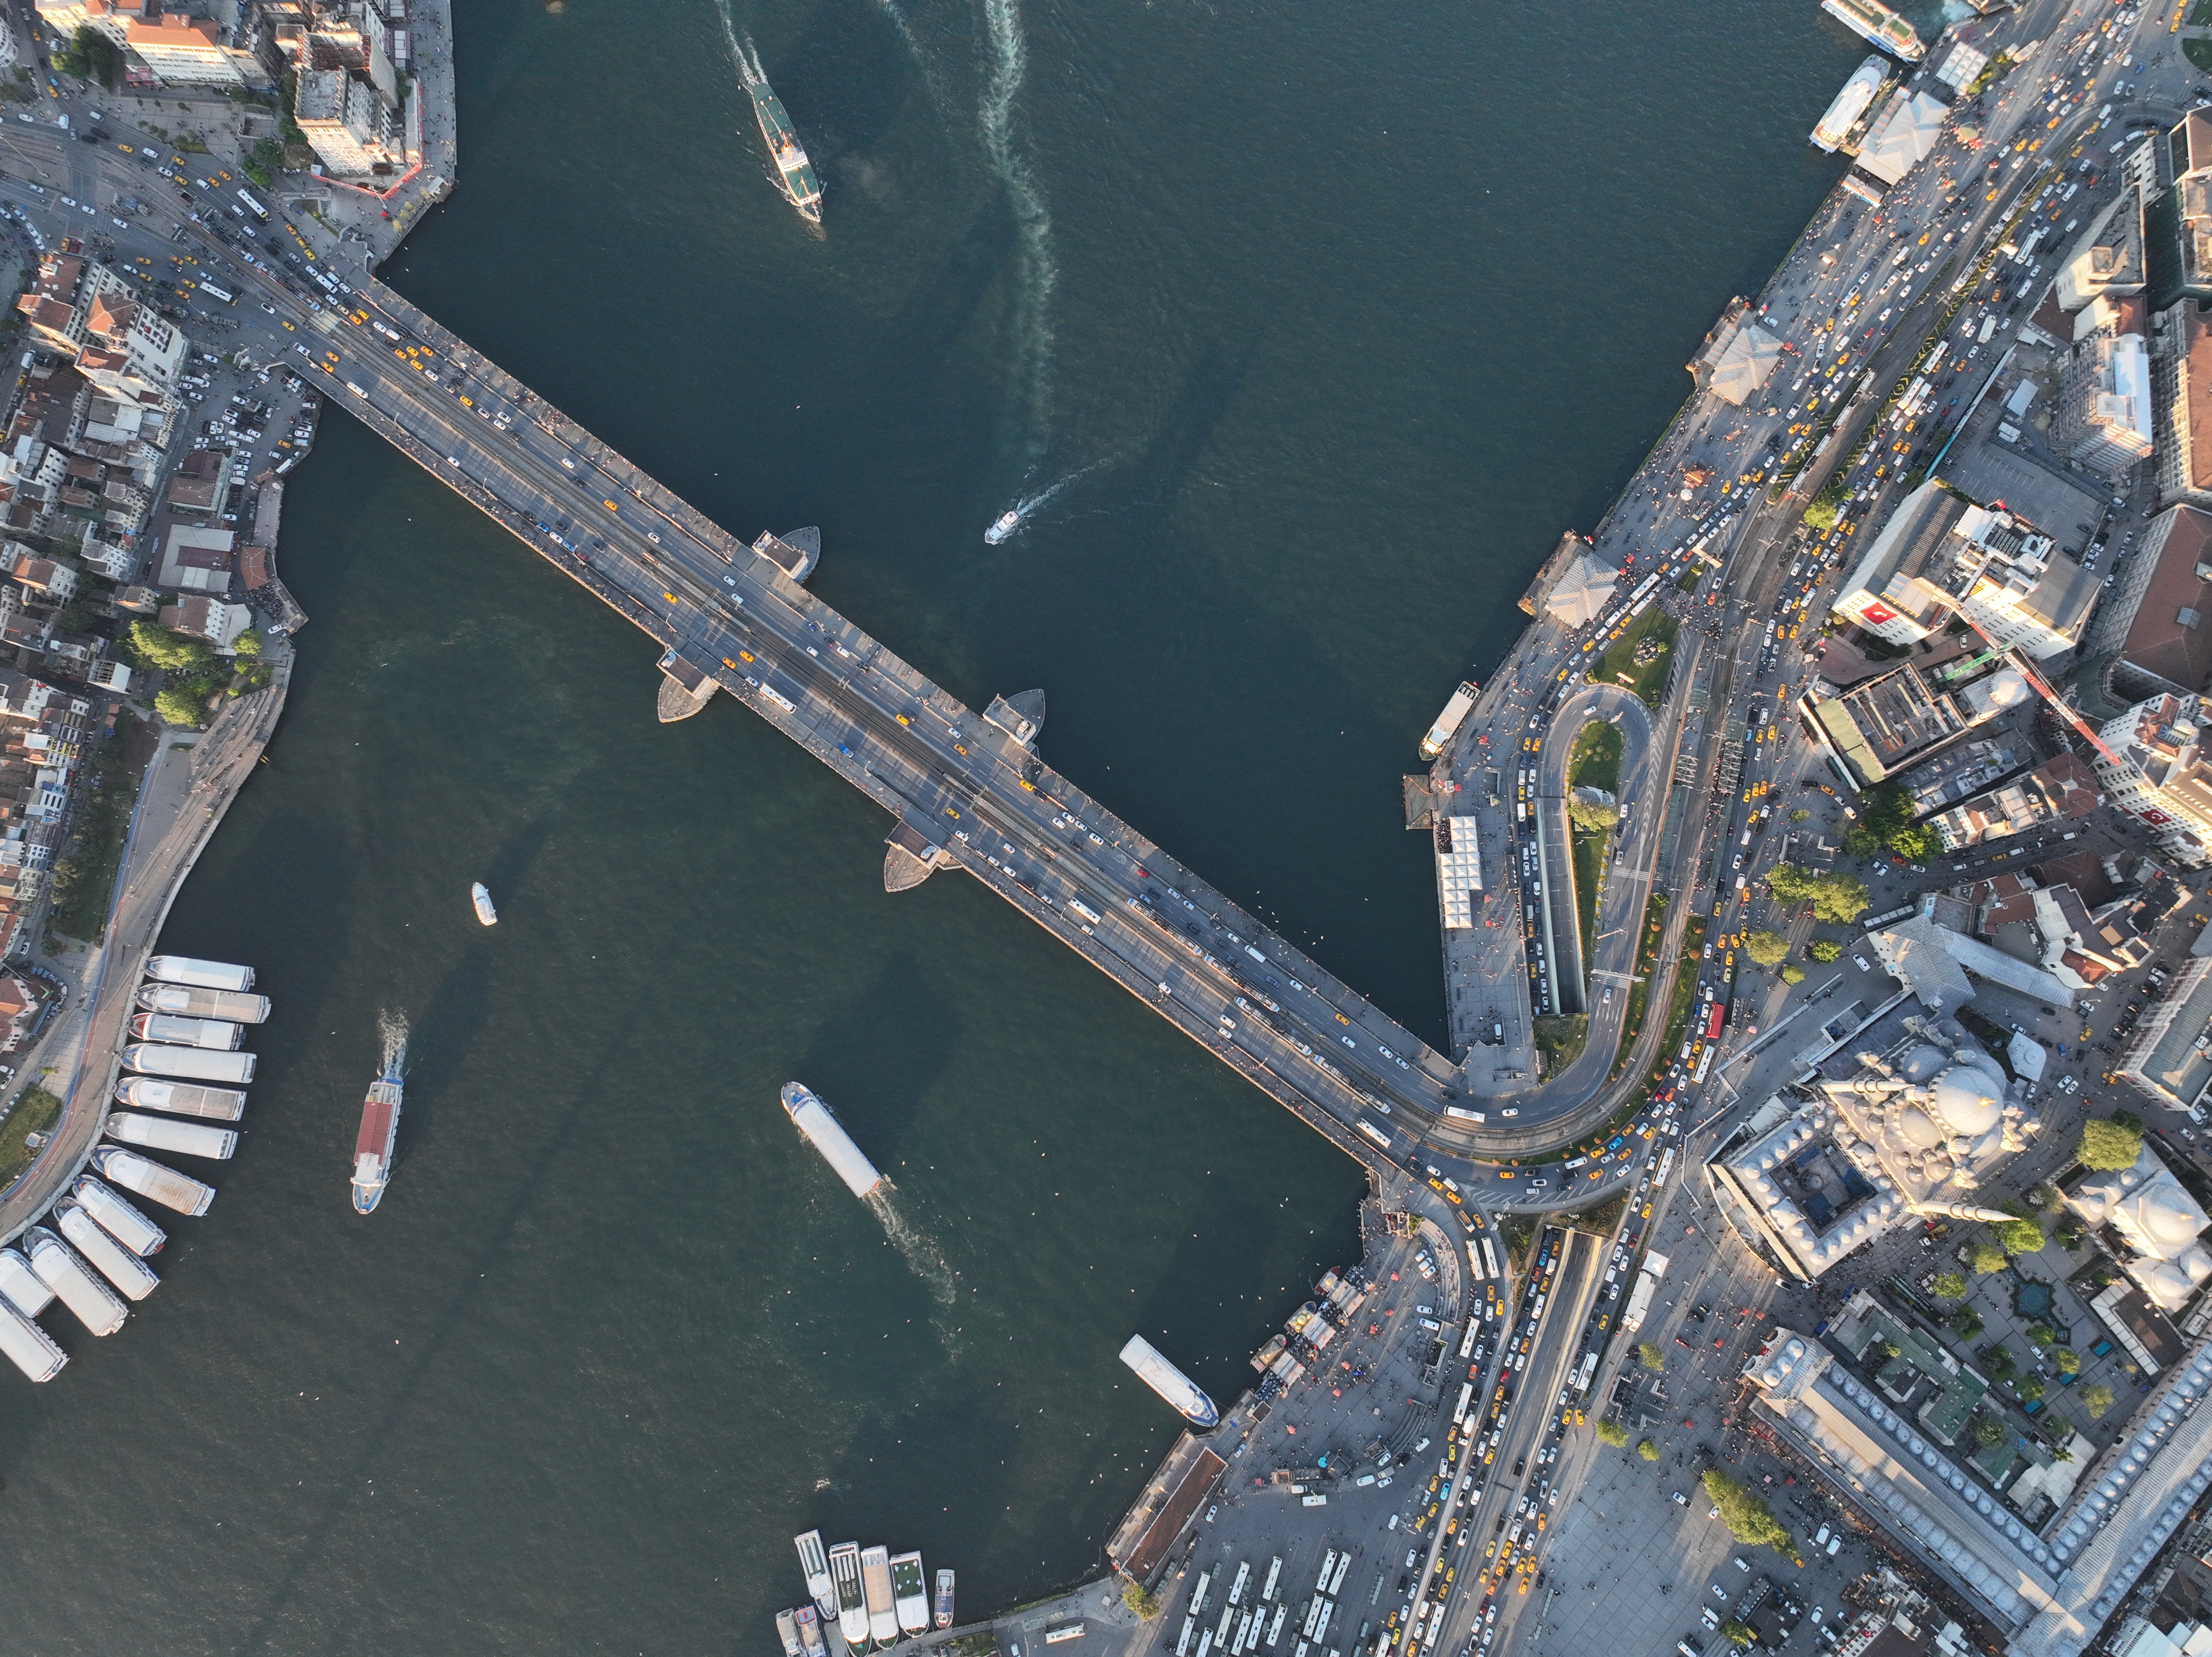 جسر غلاطة.. معبر السياح لتاريخ إسطنبول